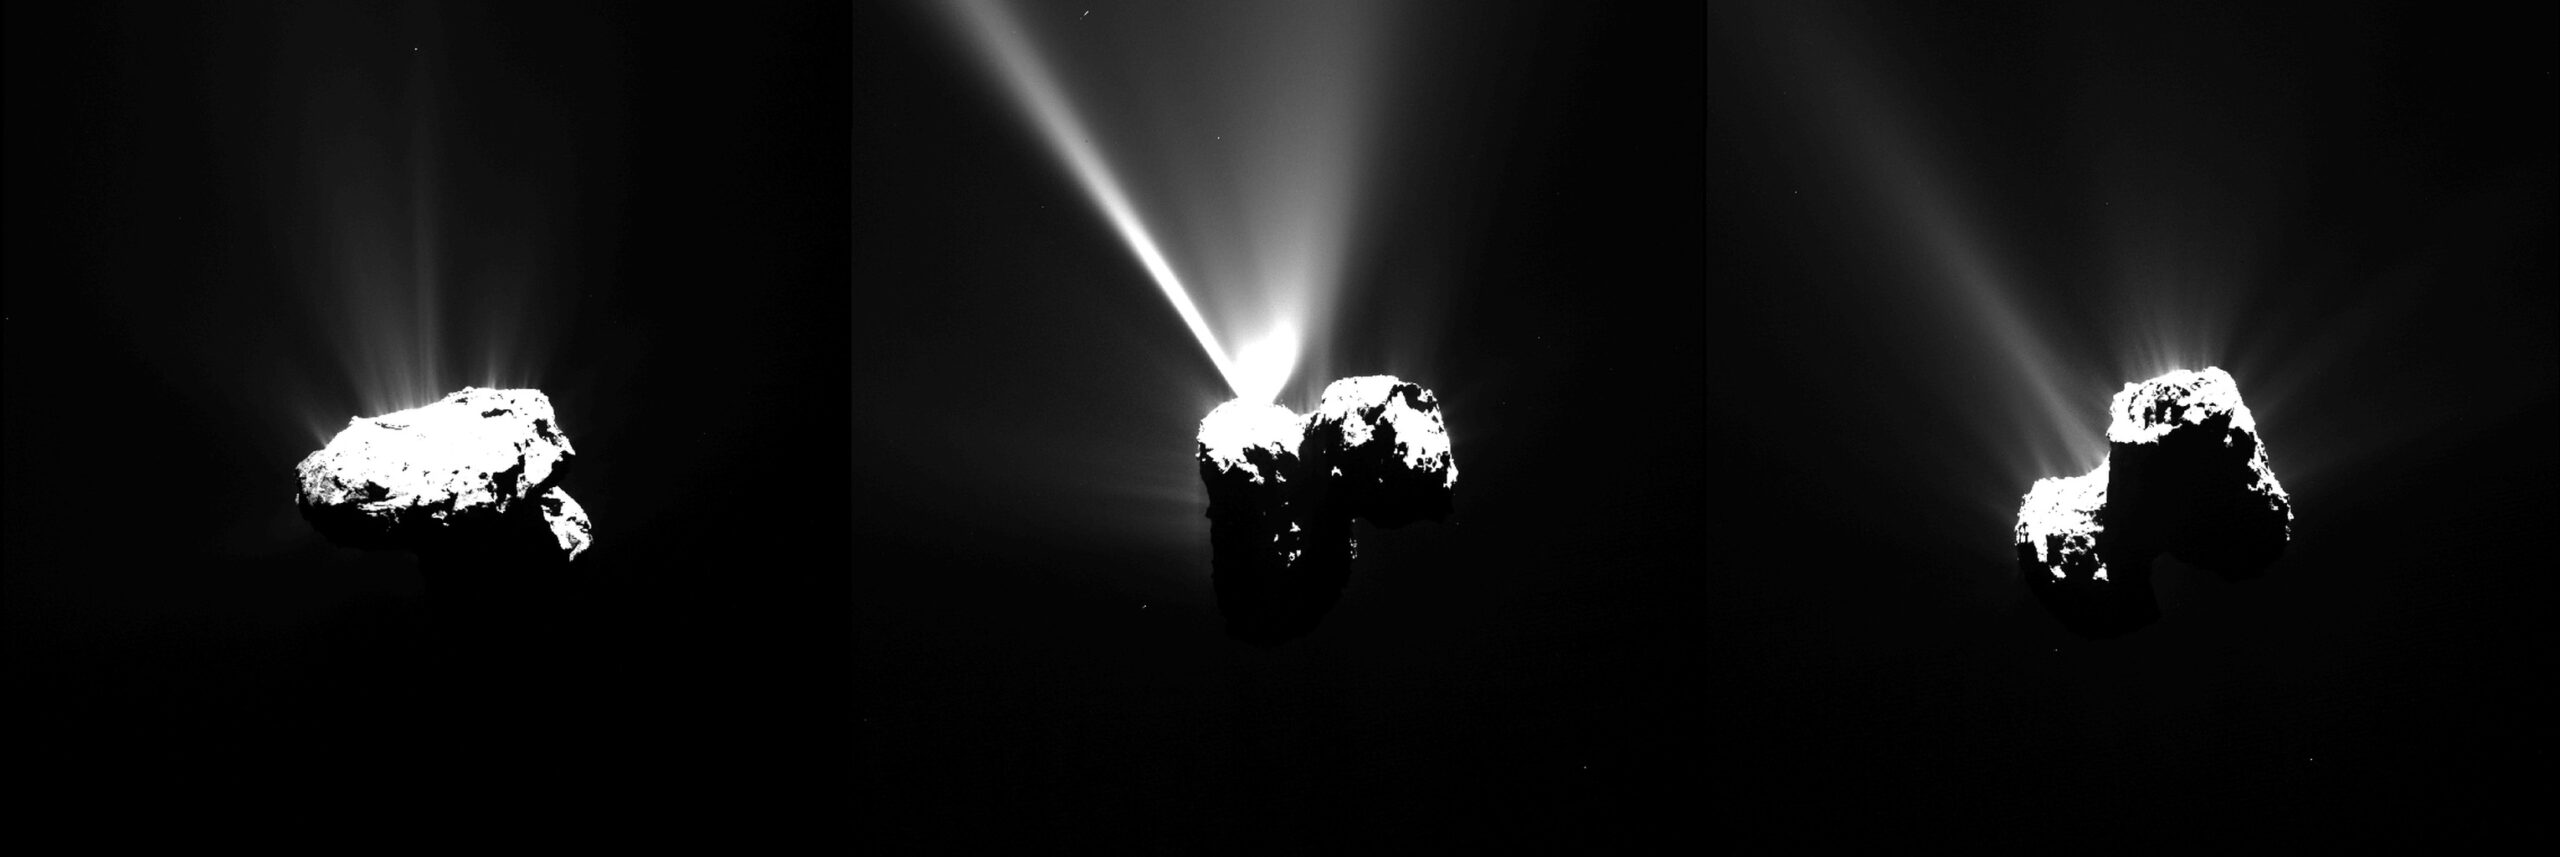 彗星 67P 接近近日點時的羅塞塔圖像